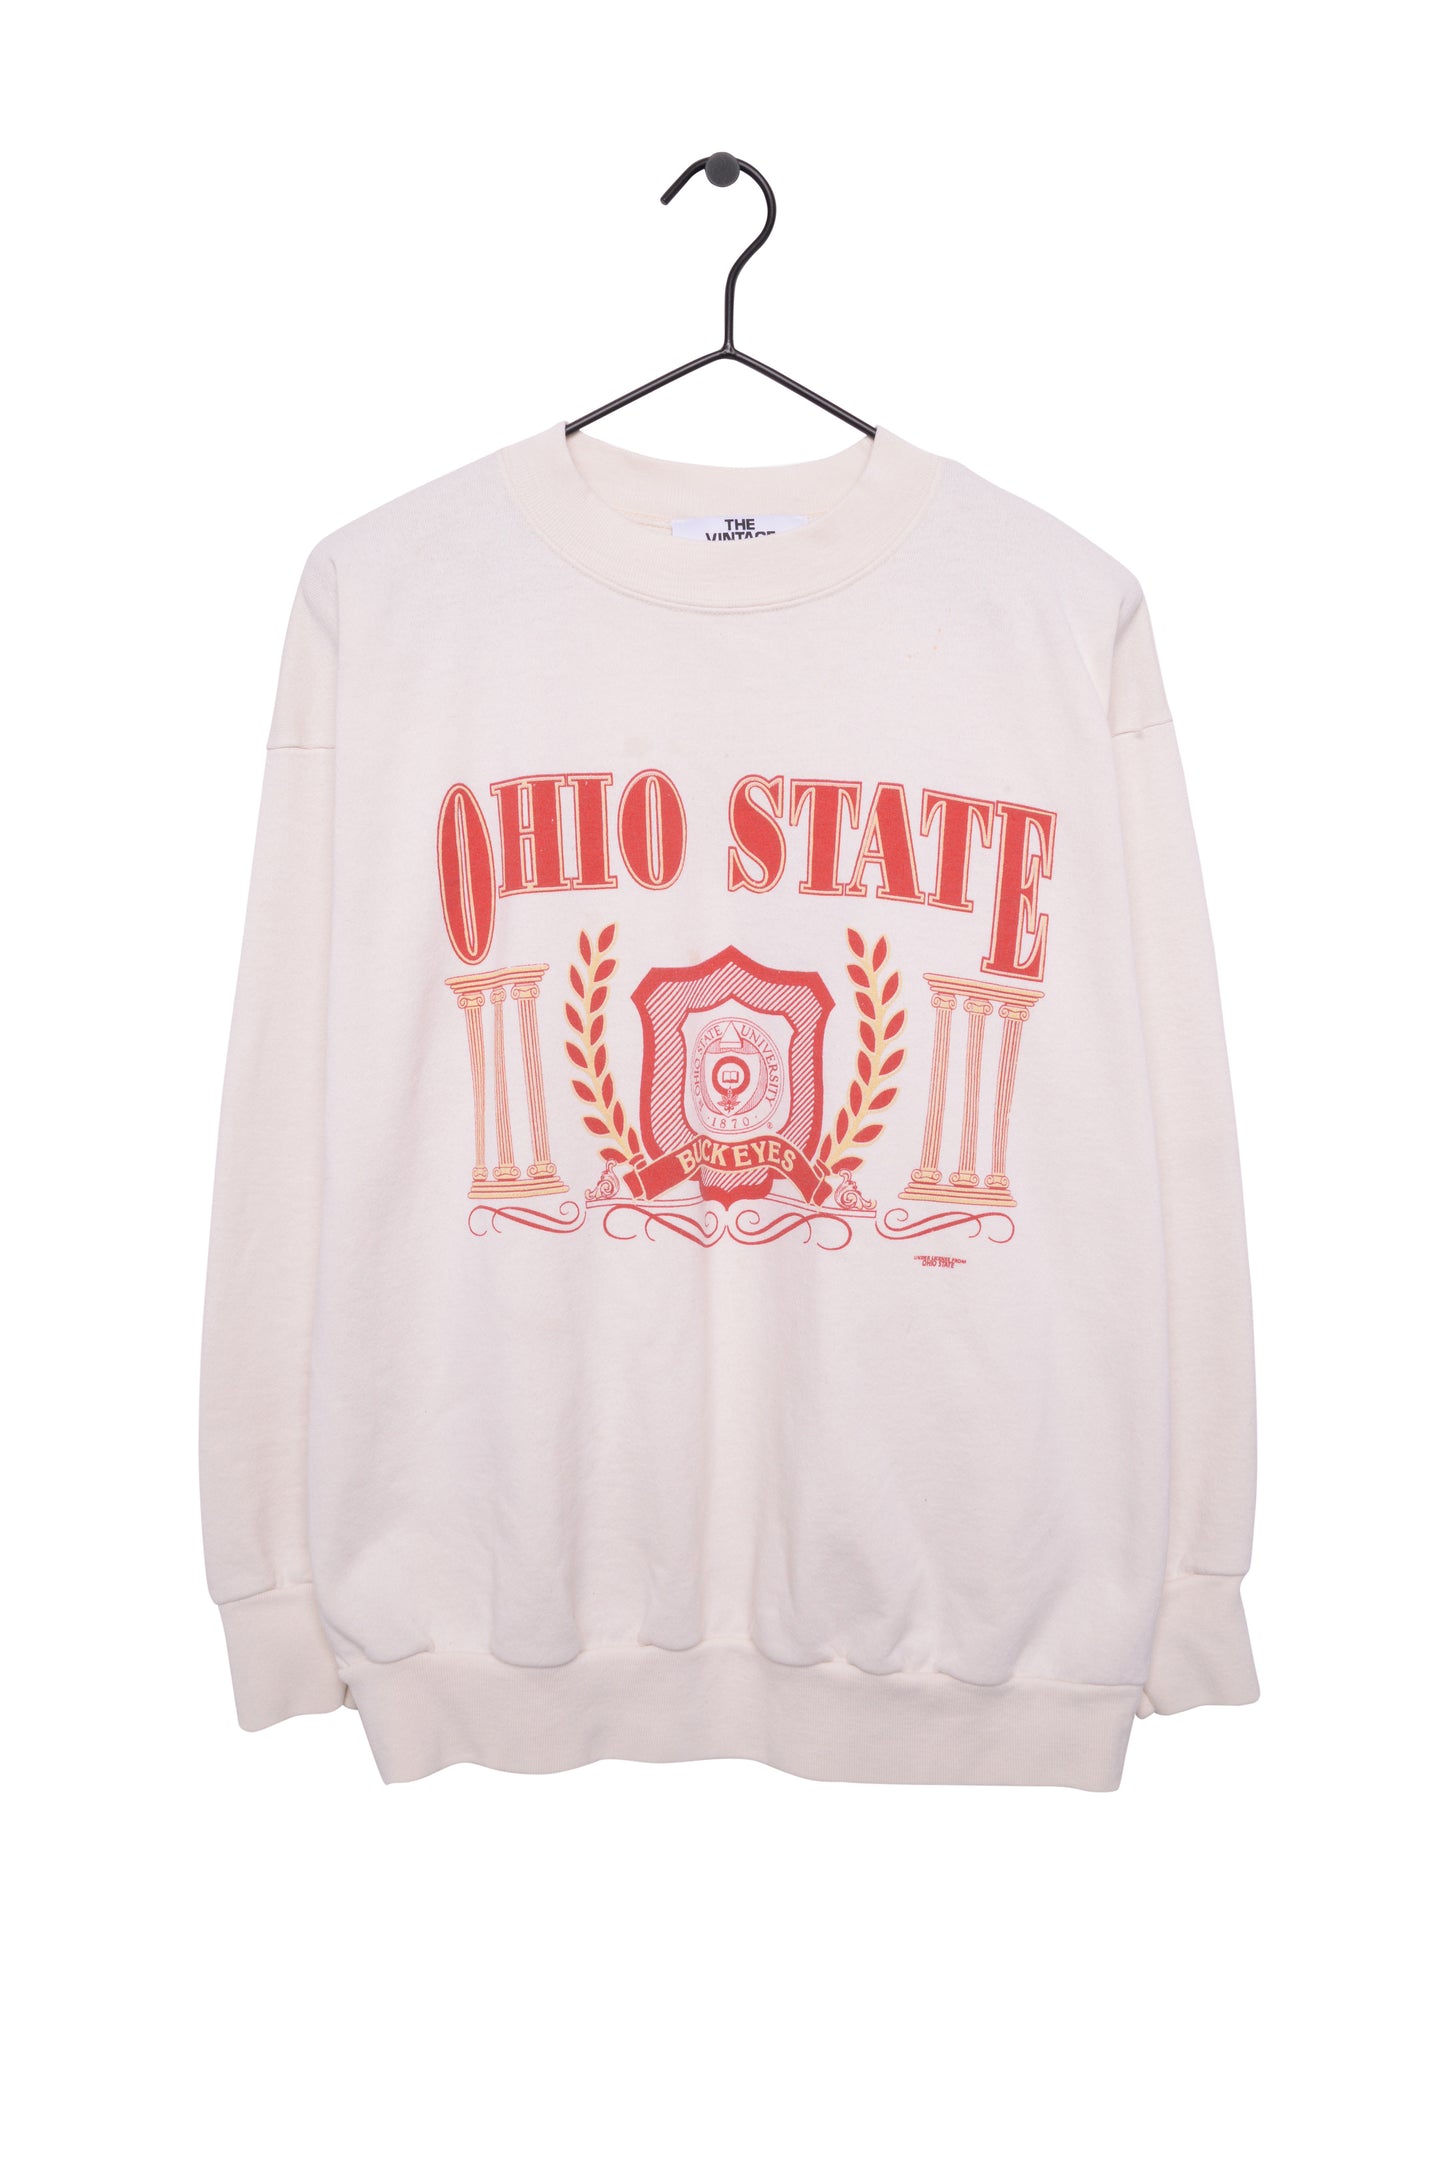 Ohio State Buckeyes Sweatshirt USA